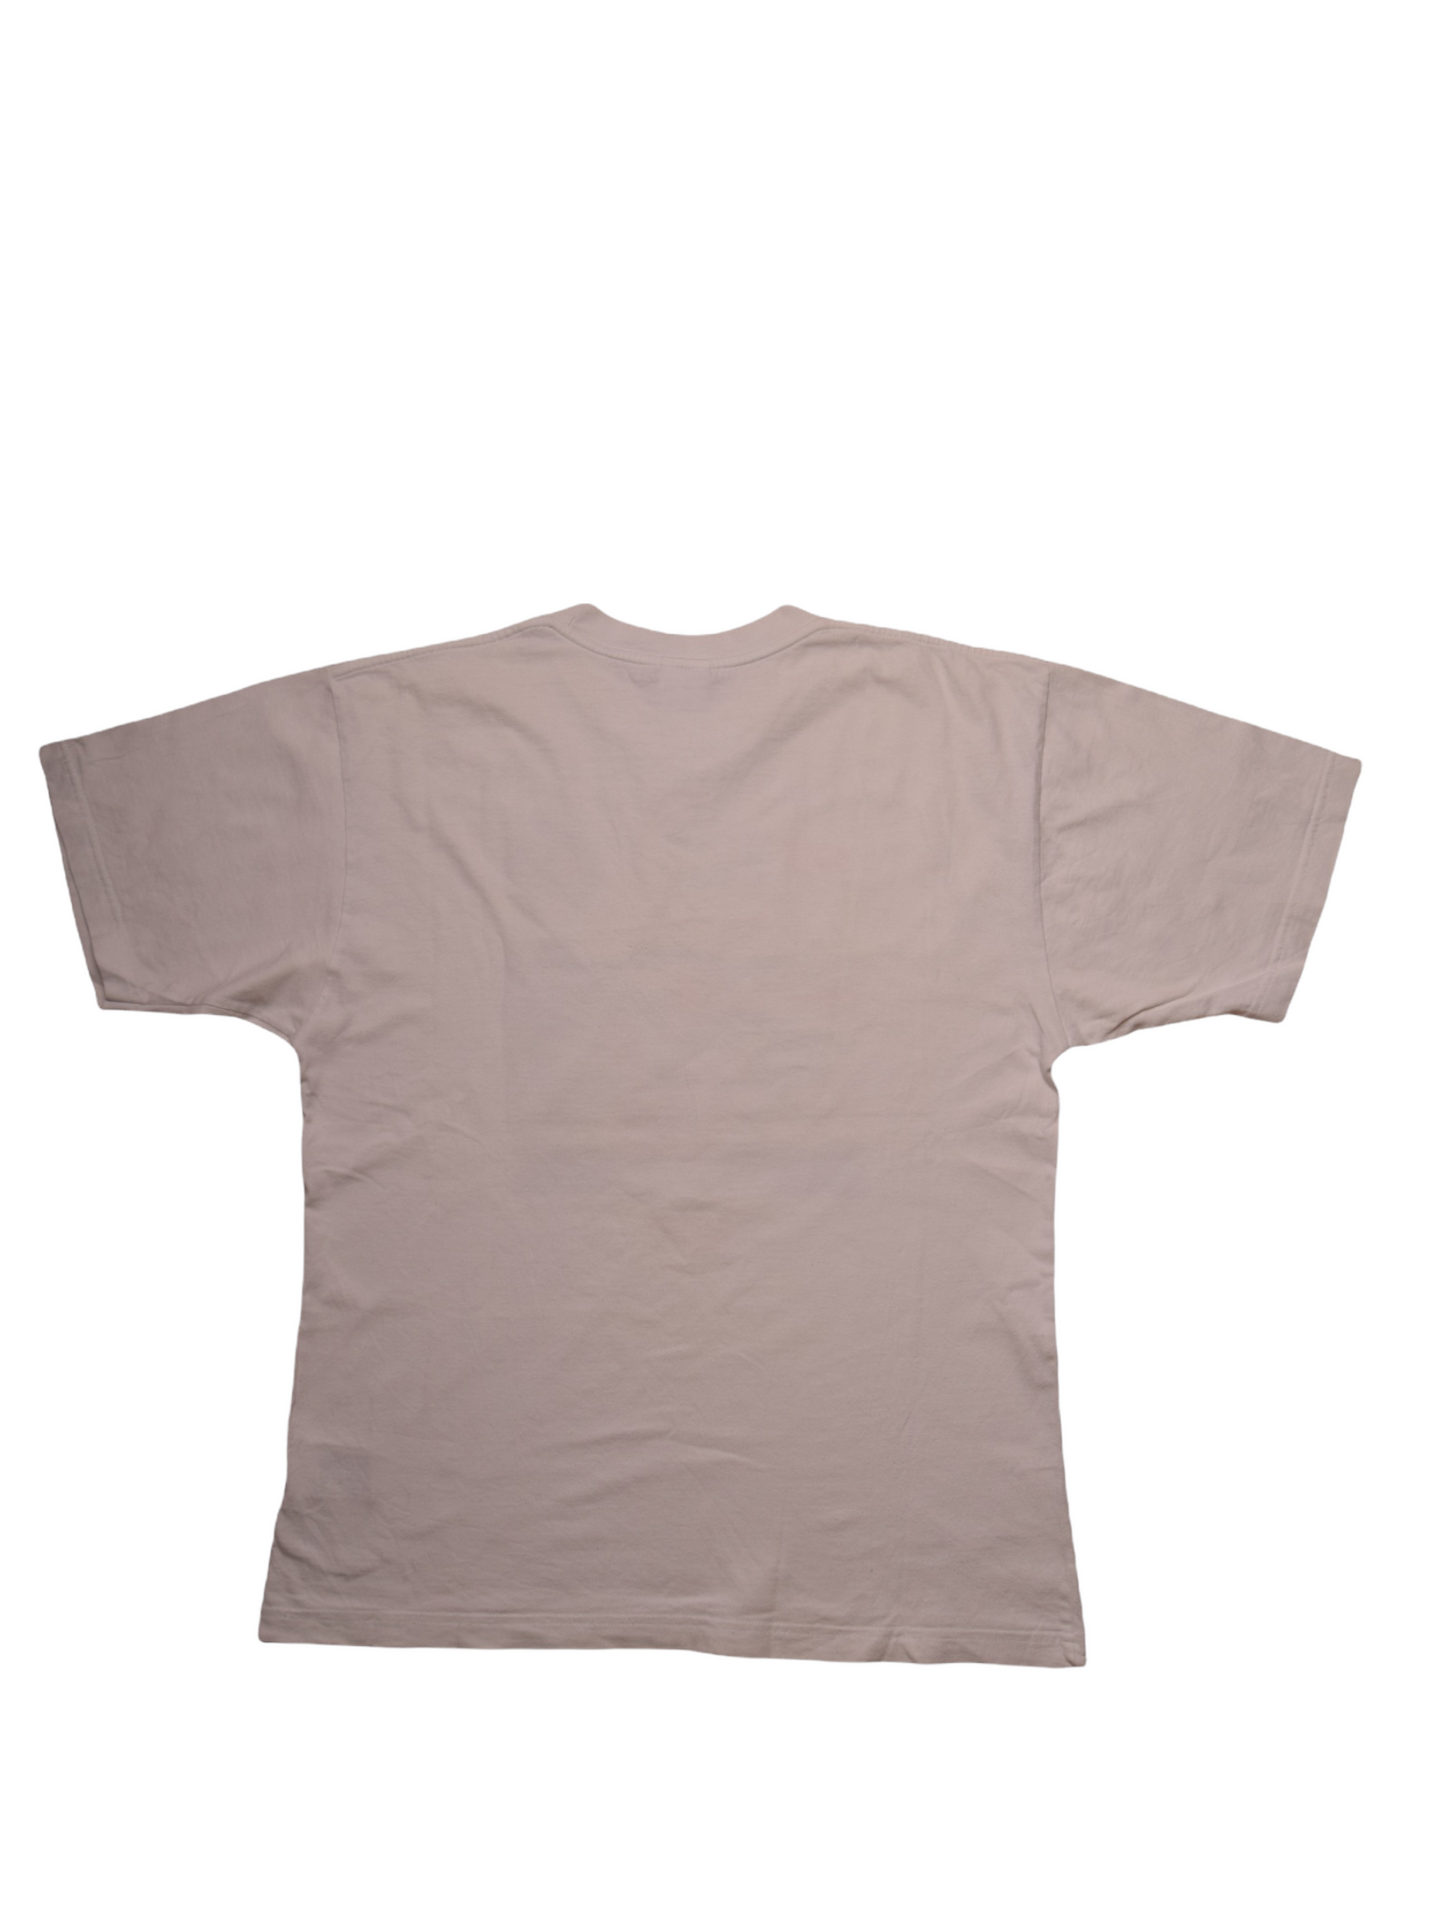 Vintage Nike Le Tour de France 97 T-Shirt Size M White 100% Cotton